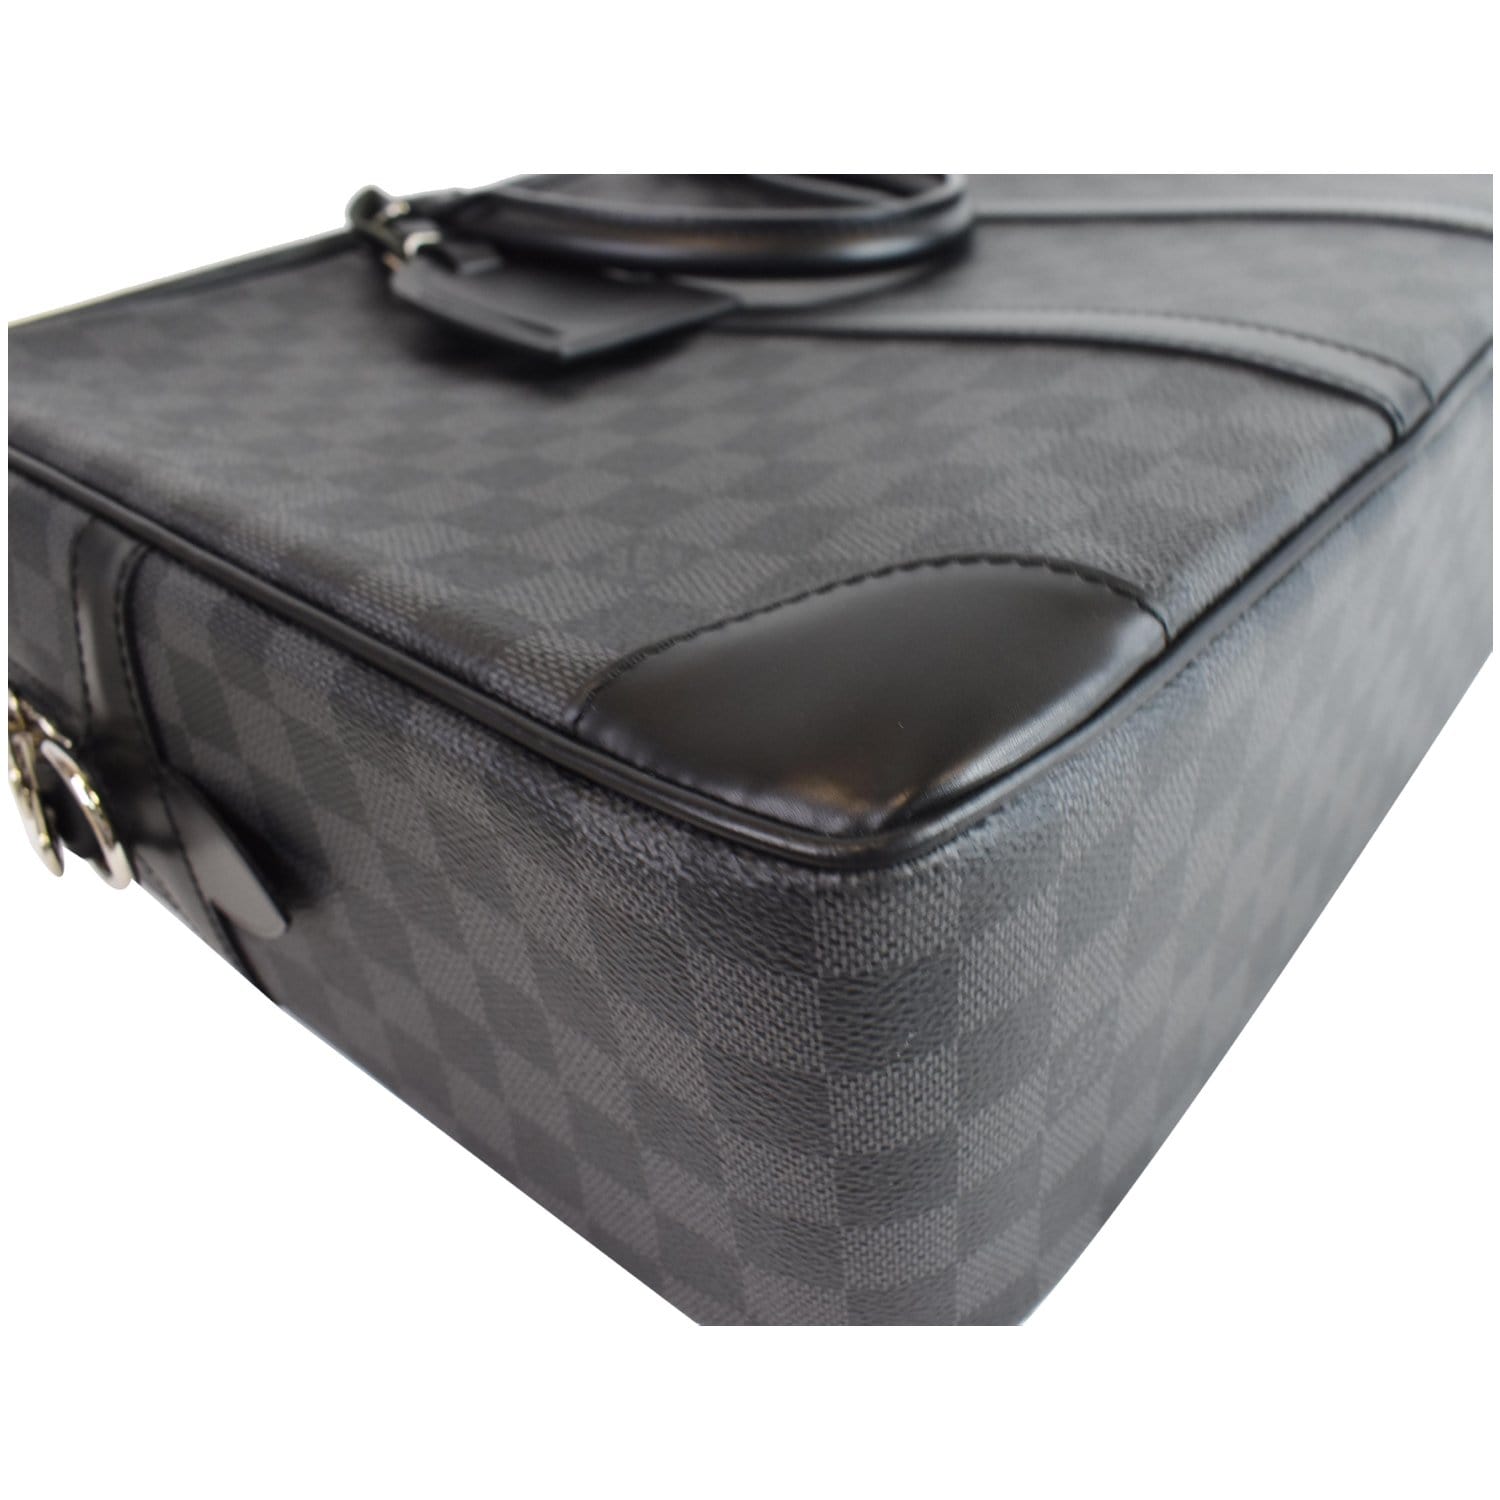 LV, Leather Briefcase Bag for Men